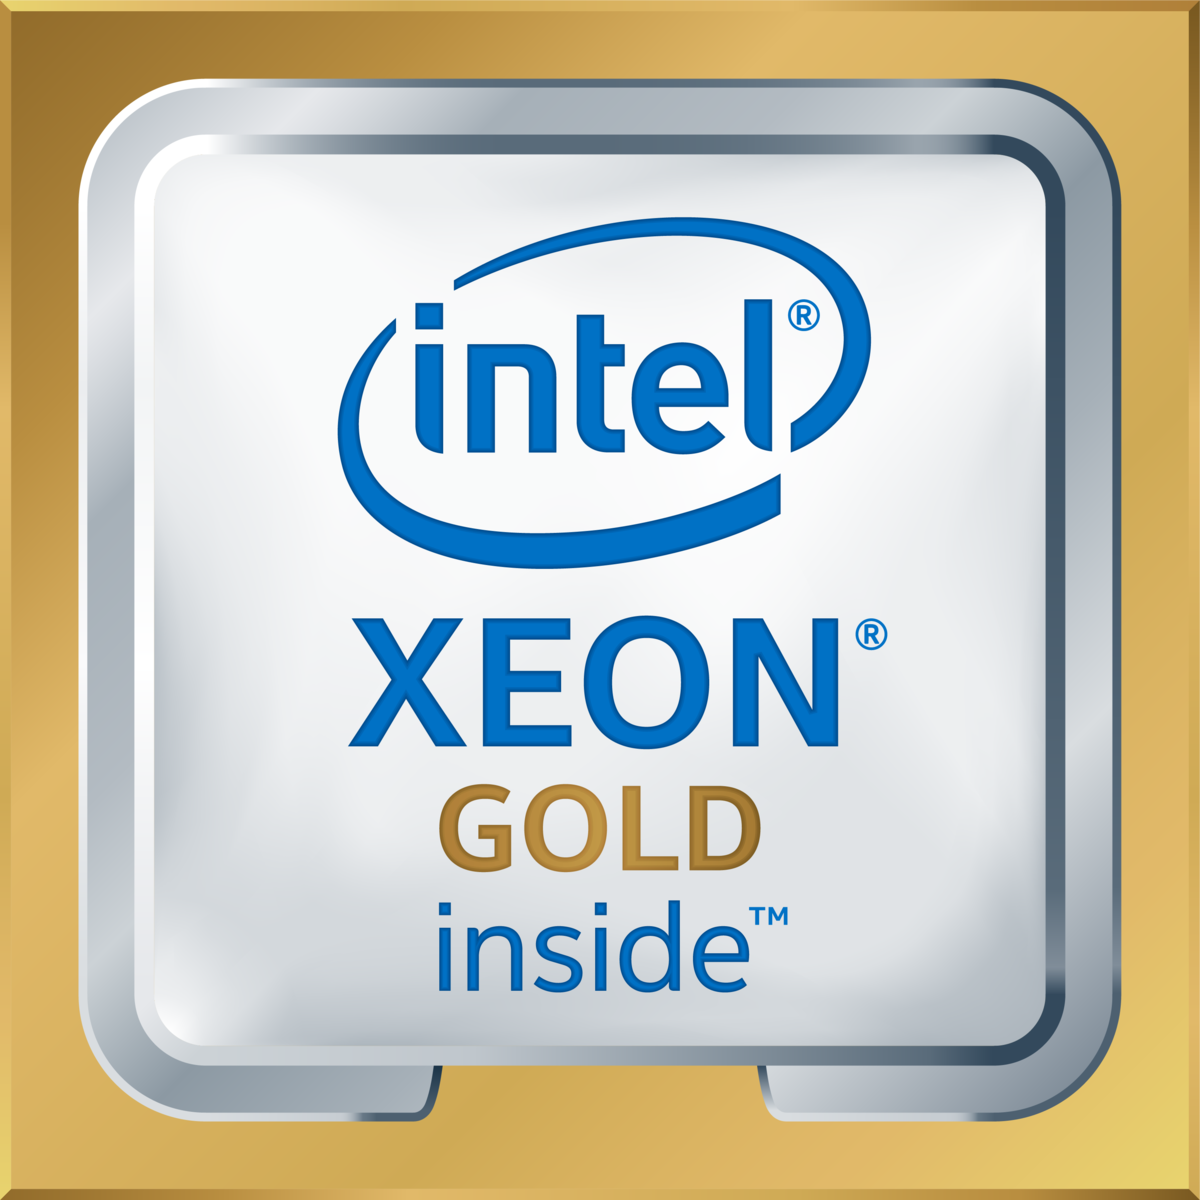 Intel(R) Xeon(R) Gold 6140 CPU @ 2.30GHz's logo